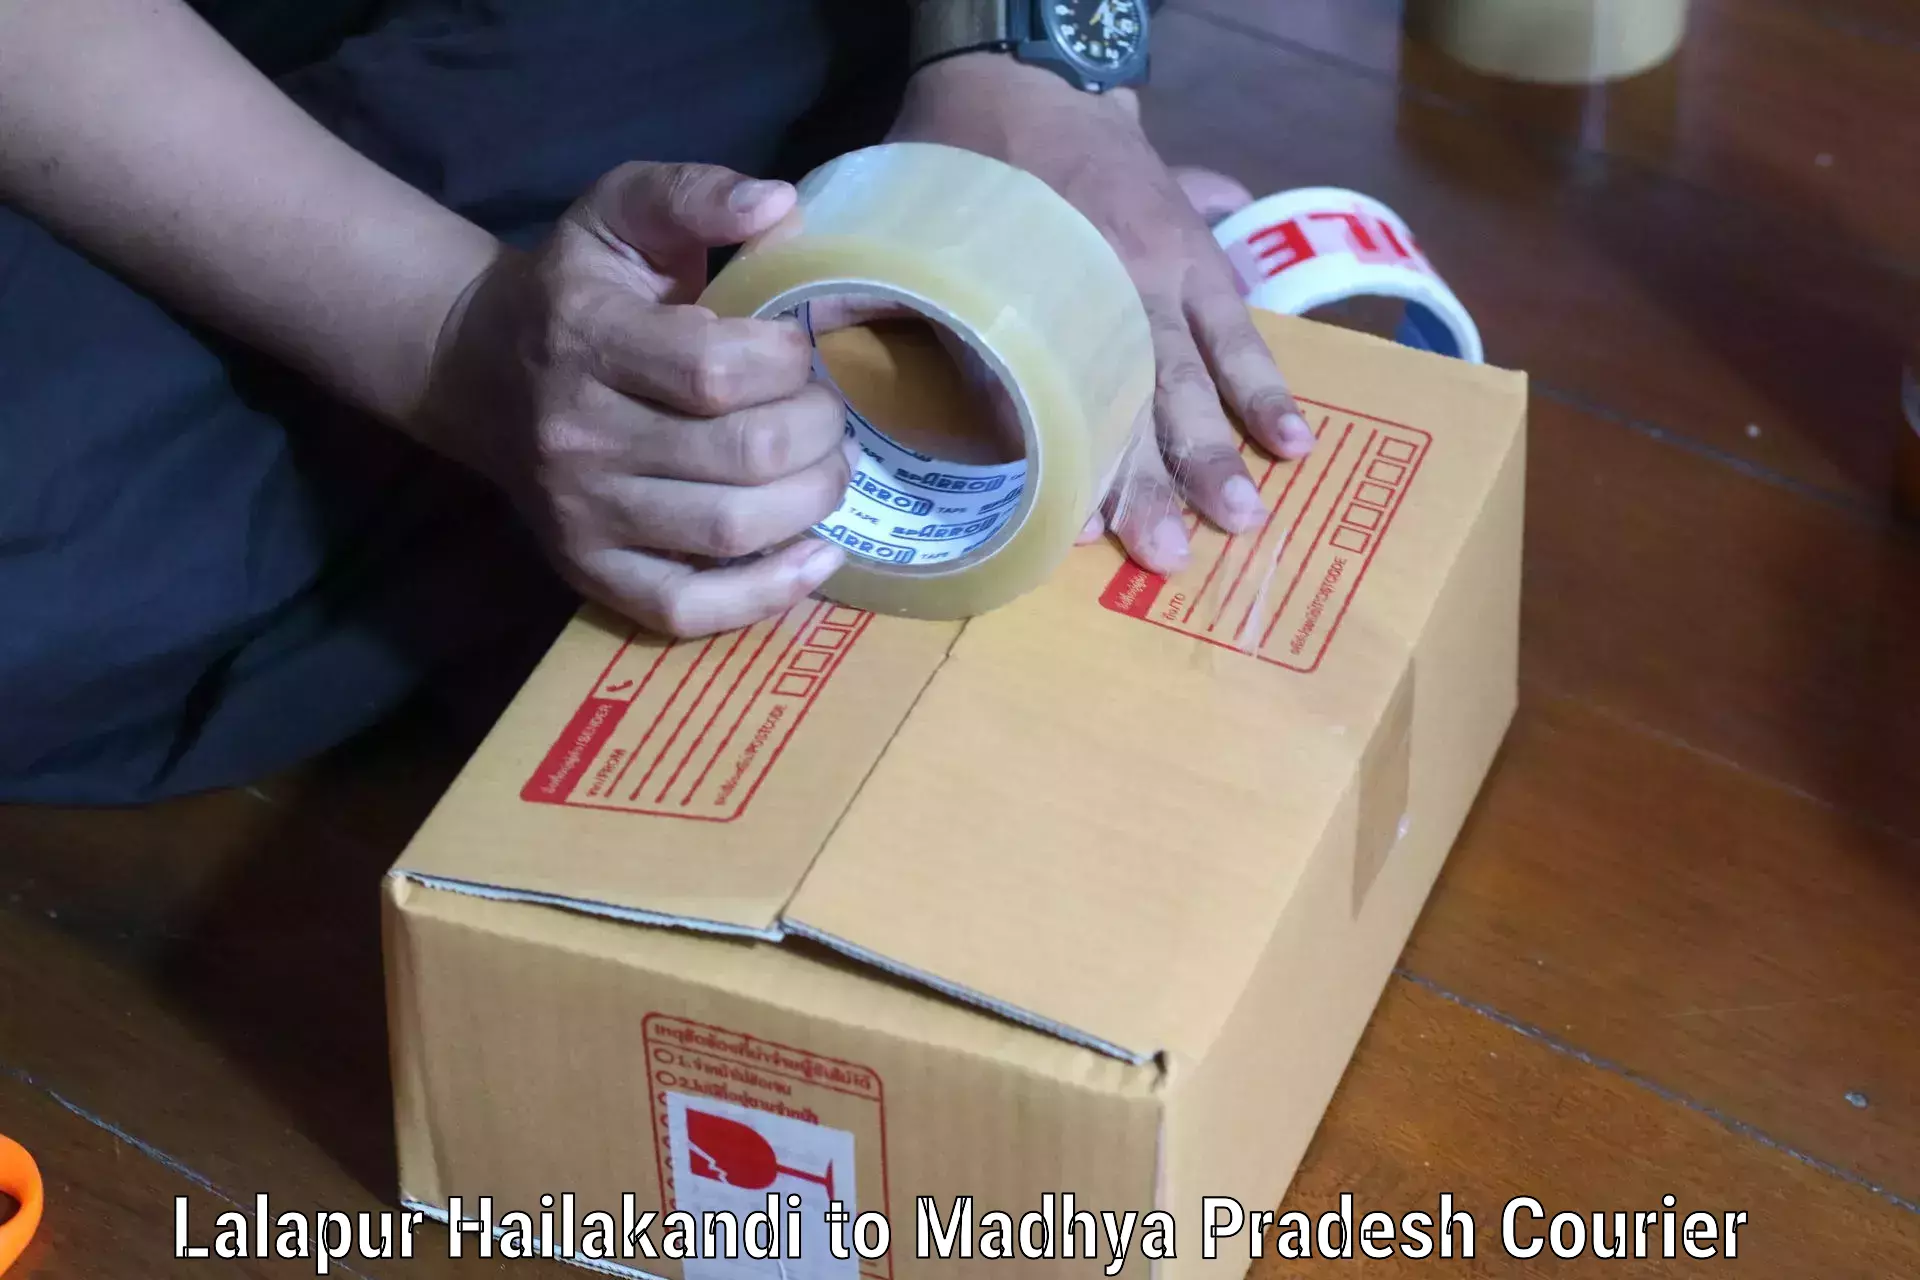 Affordable shipping solutions Lalapur Hailakandi to Mandla